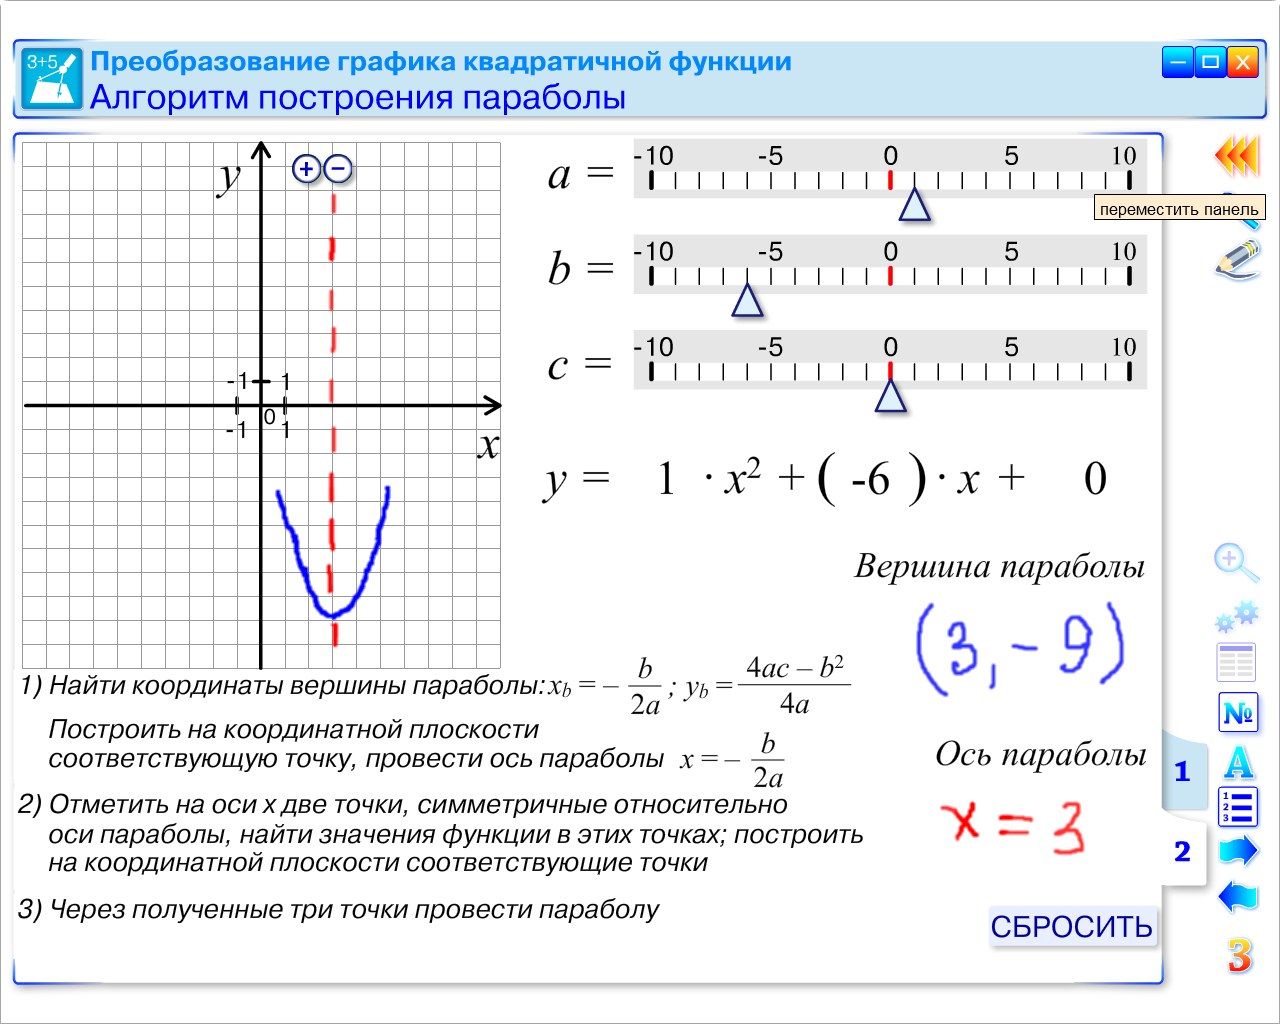 Технологическая карта урока геометрии в 9 классе по теме: «Решение неравенств второй степени с одной переменной »